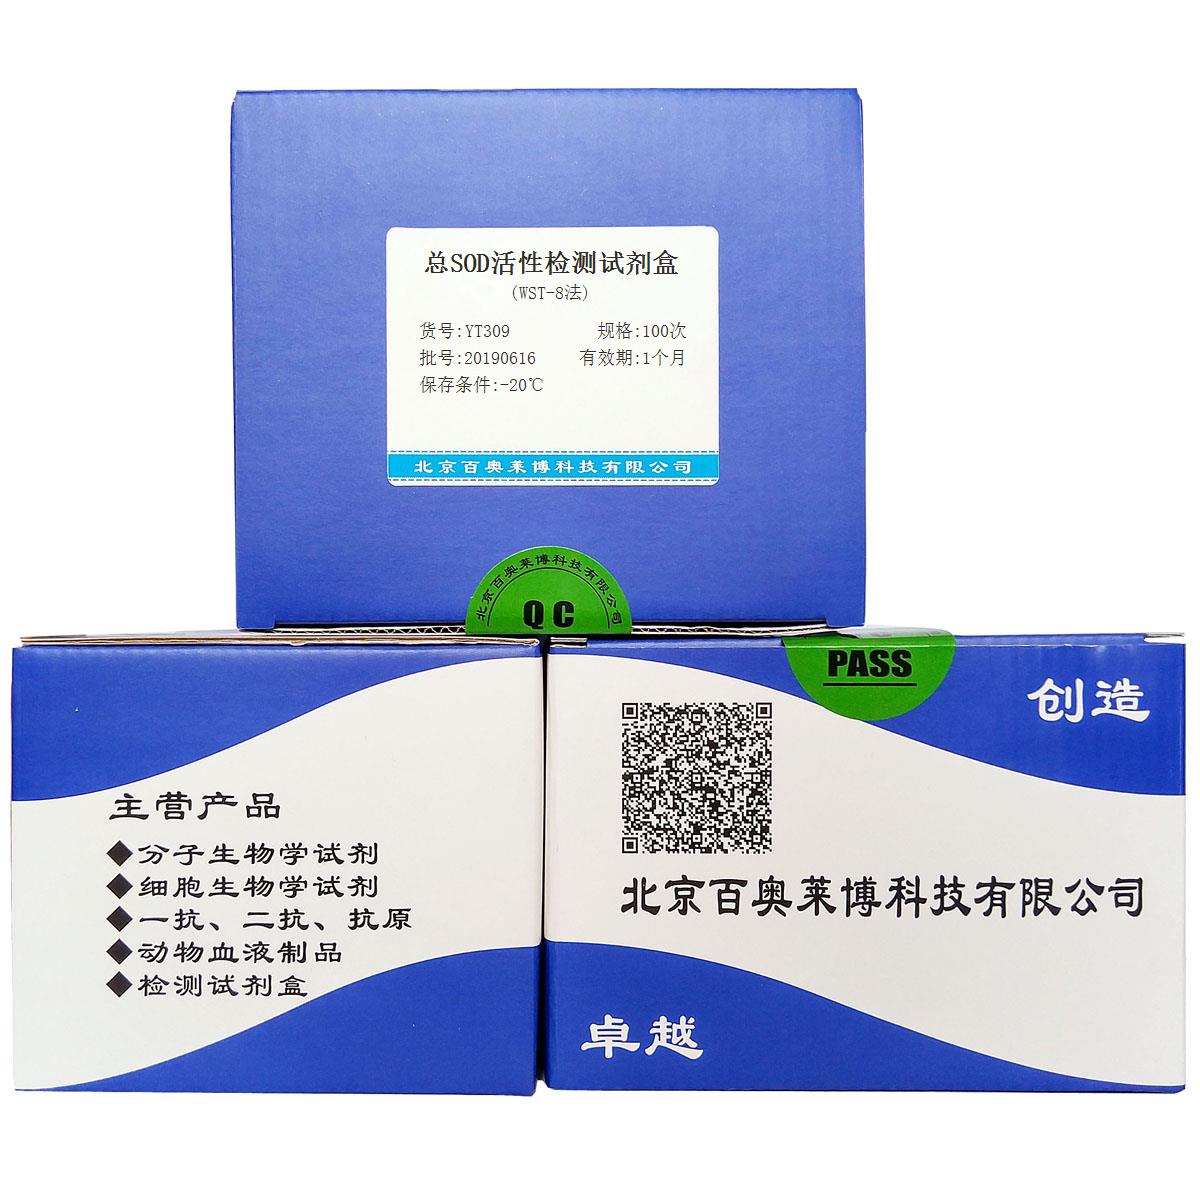 总SOD活性检测试剂盒(WST-8法)现货供应